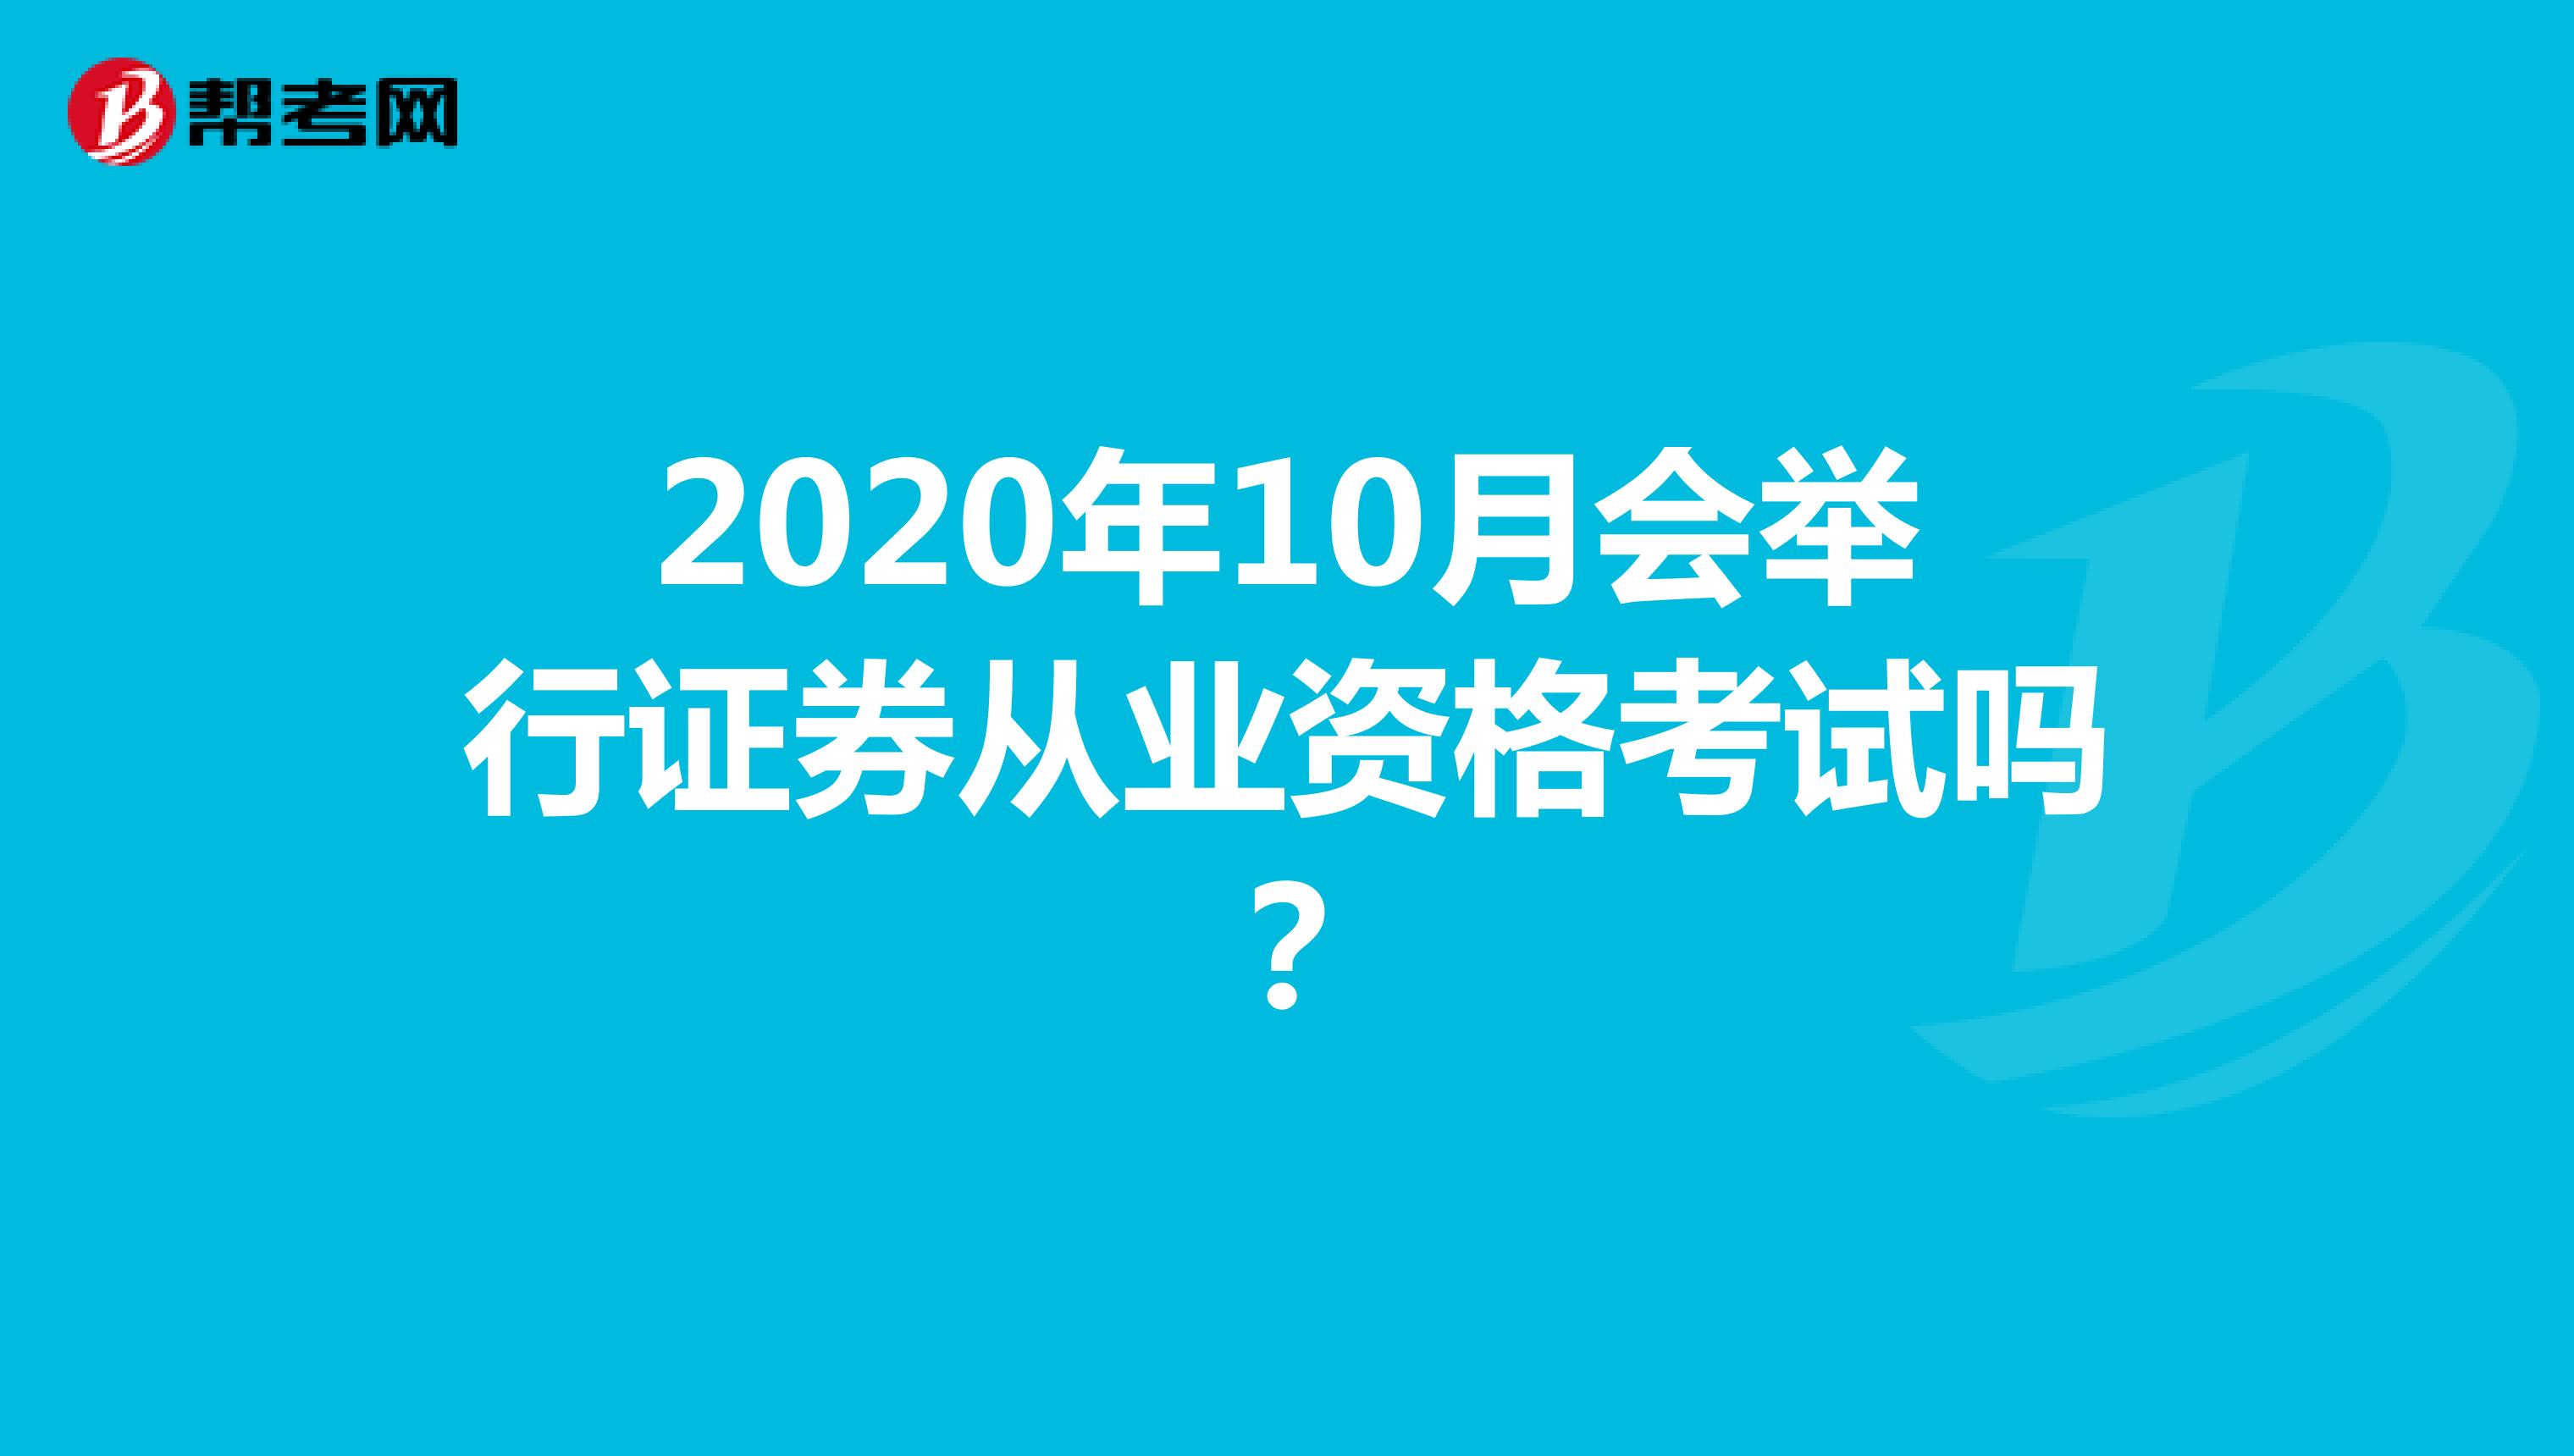 2020年10月会举行证券从业资格考试吗？